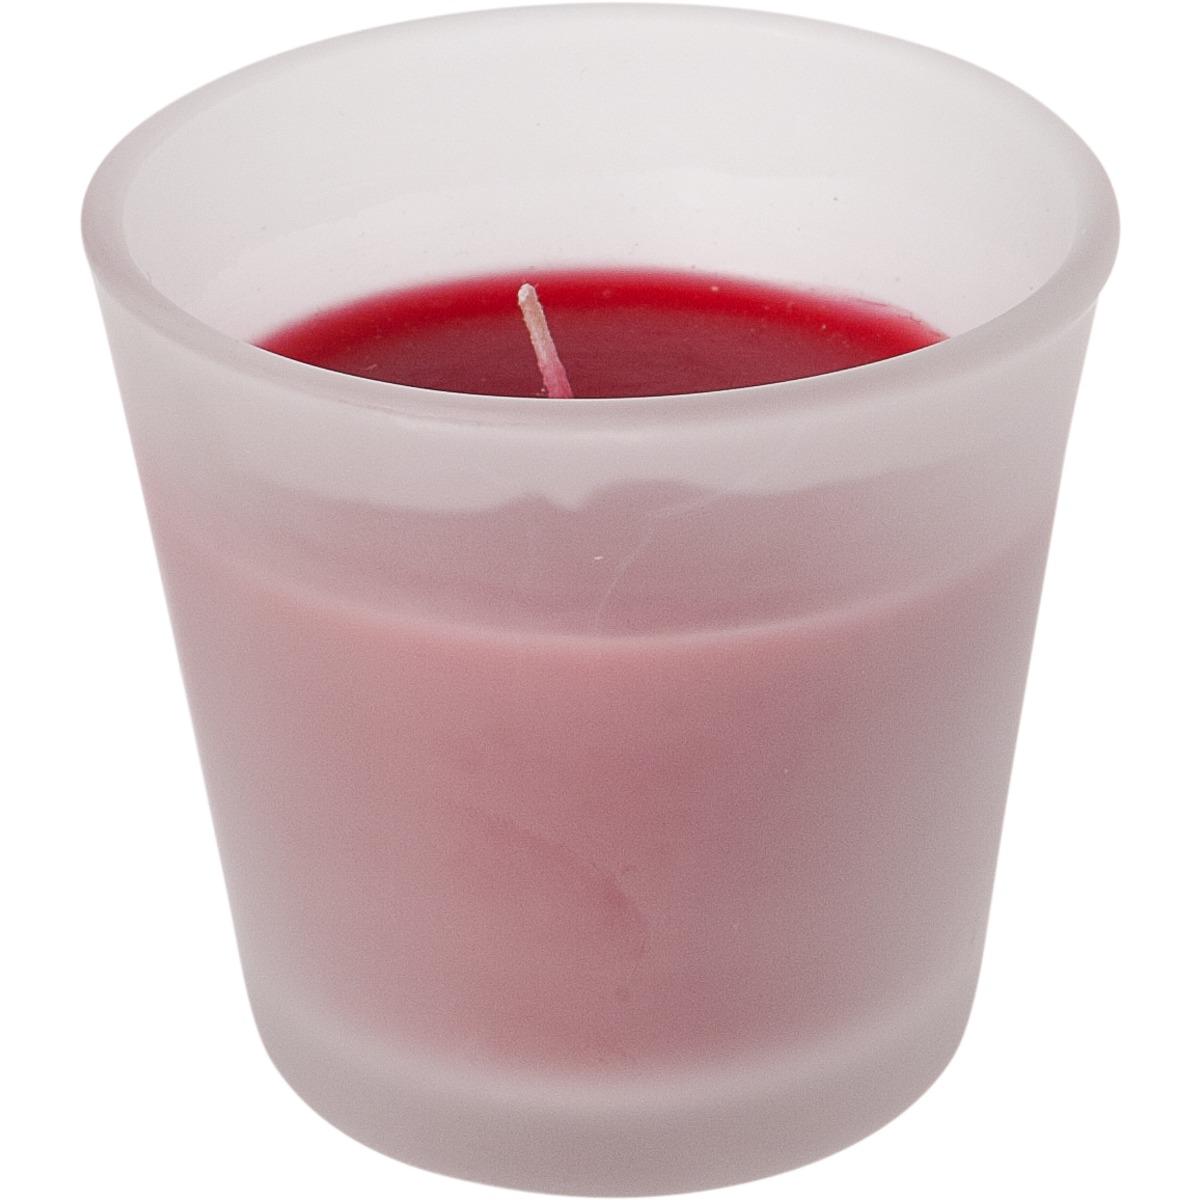 Bougie dans son pot en verre givré - 7,5 x 7,5 cm - Rouge